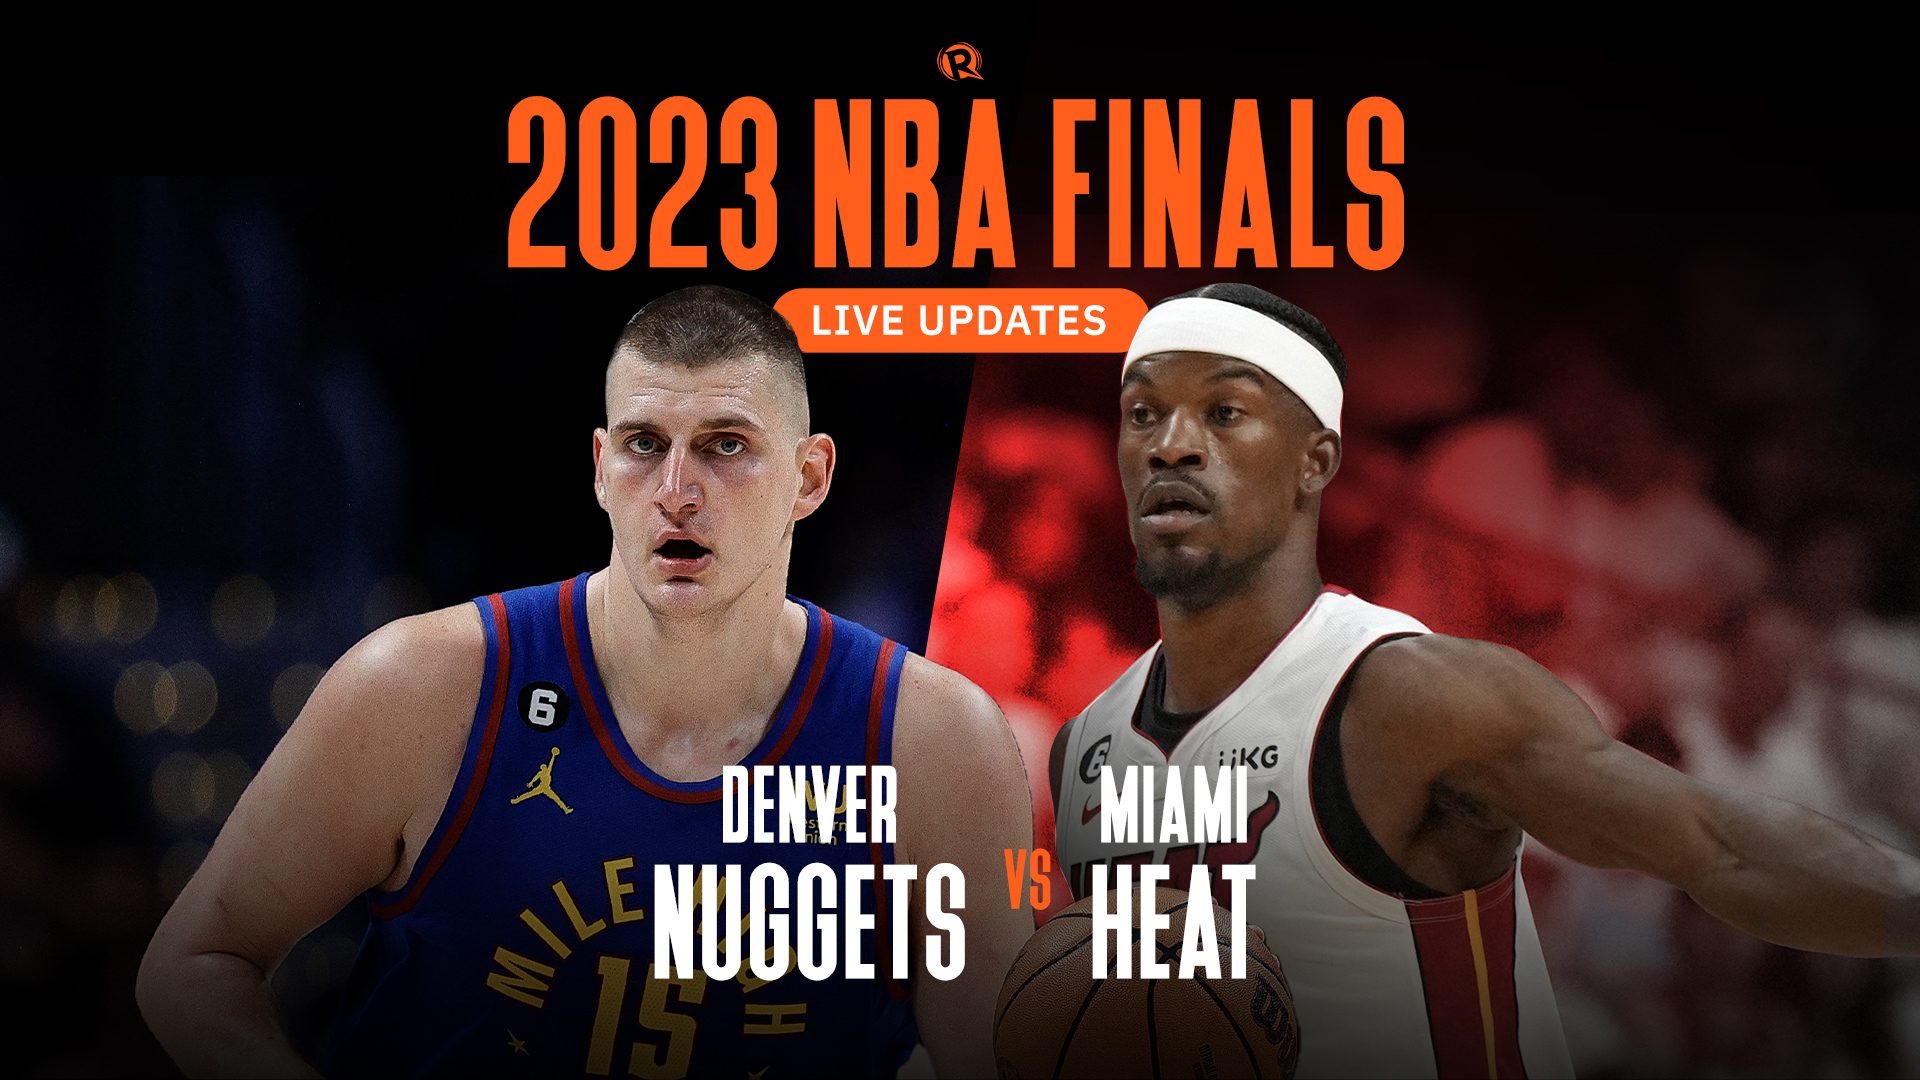 NBA Finals Live Updates Carousel 2023 